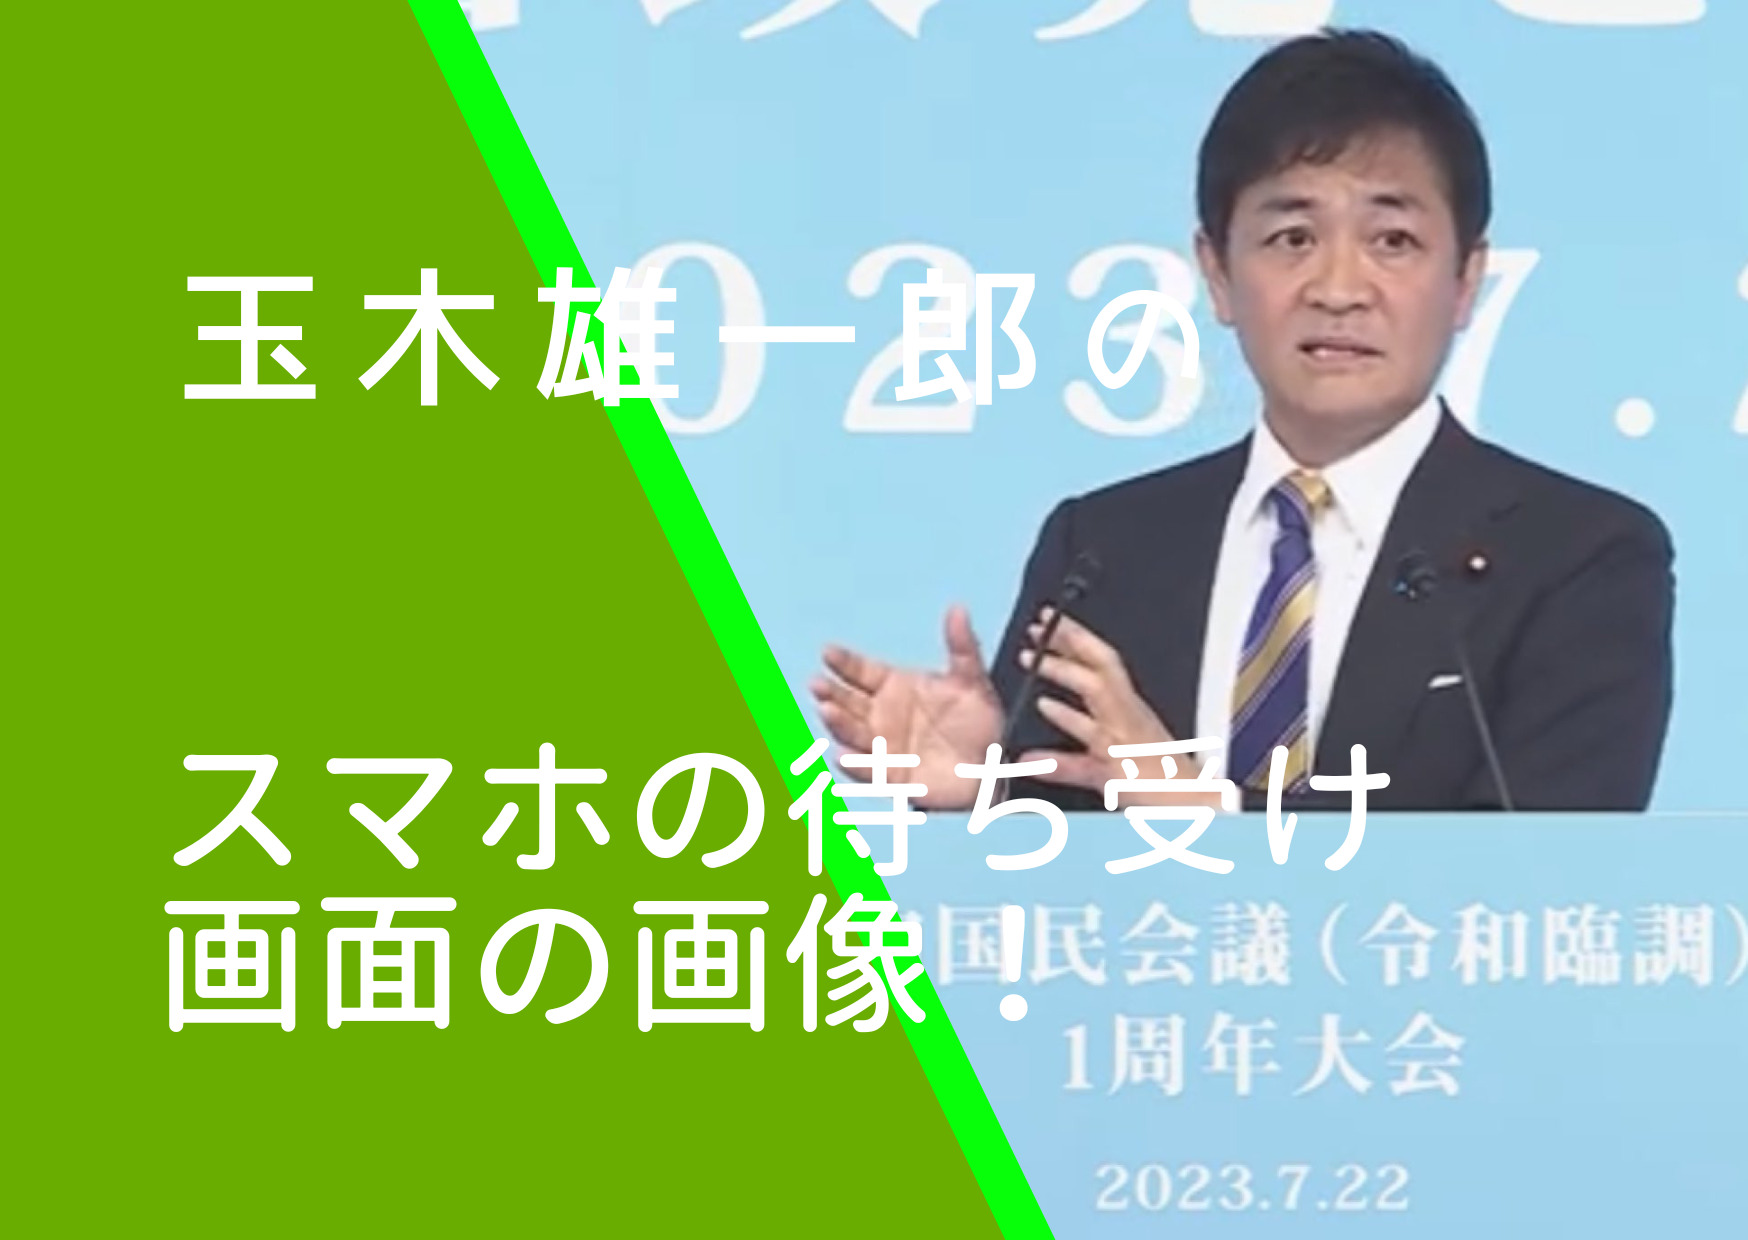 国民民主党の玉木雄一郎代表のスマホの待ち受け画面の画像